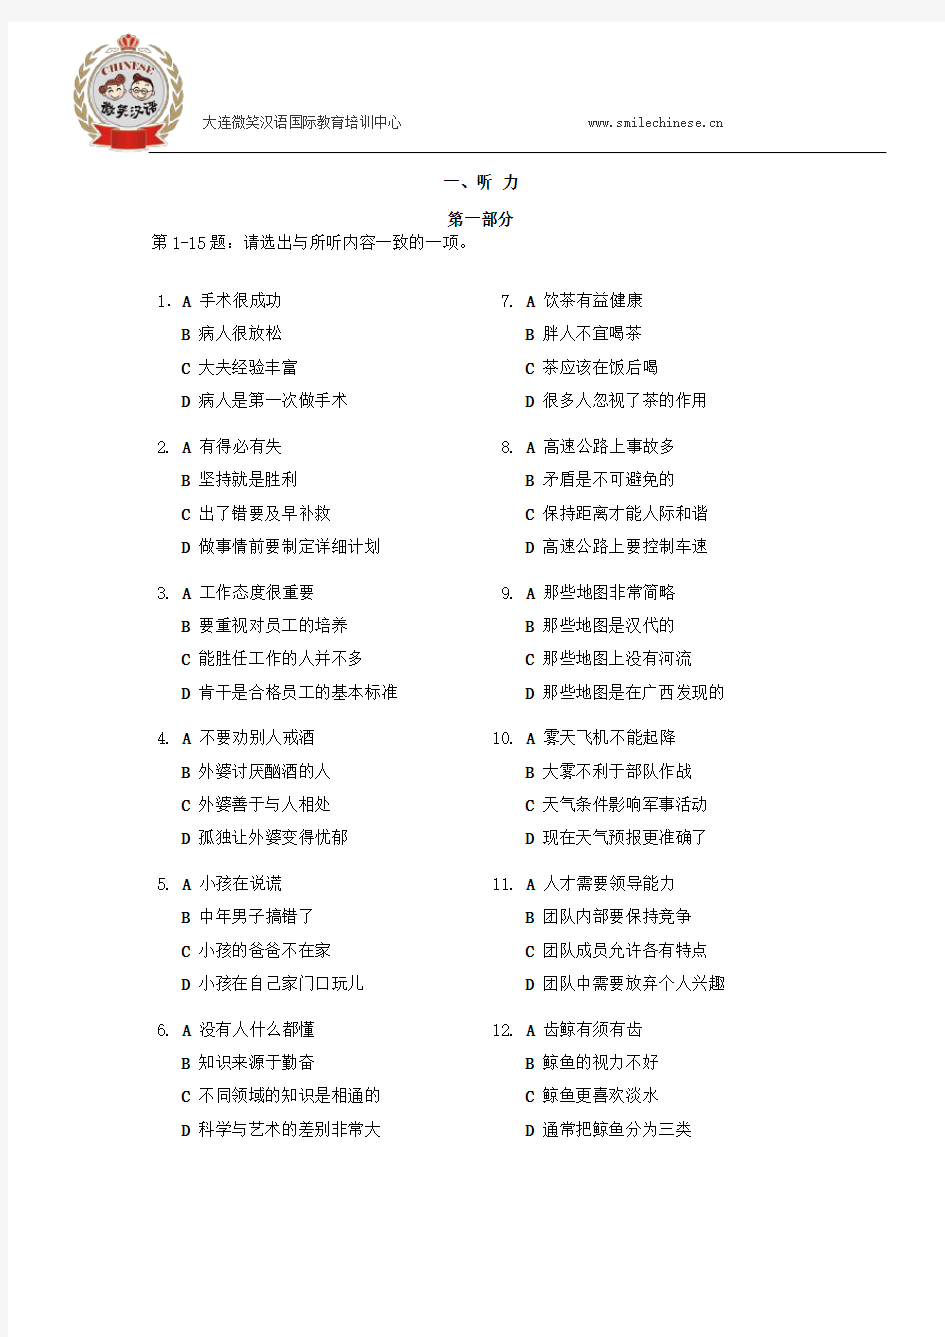 2016国家汉办(HSK)汉语水平考试六级考试真题分解